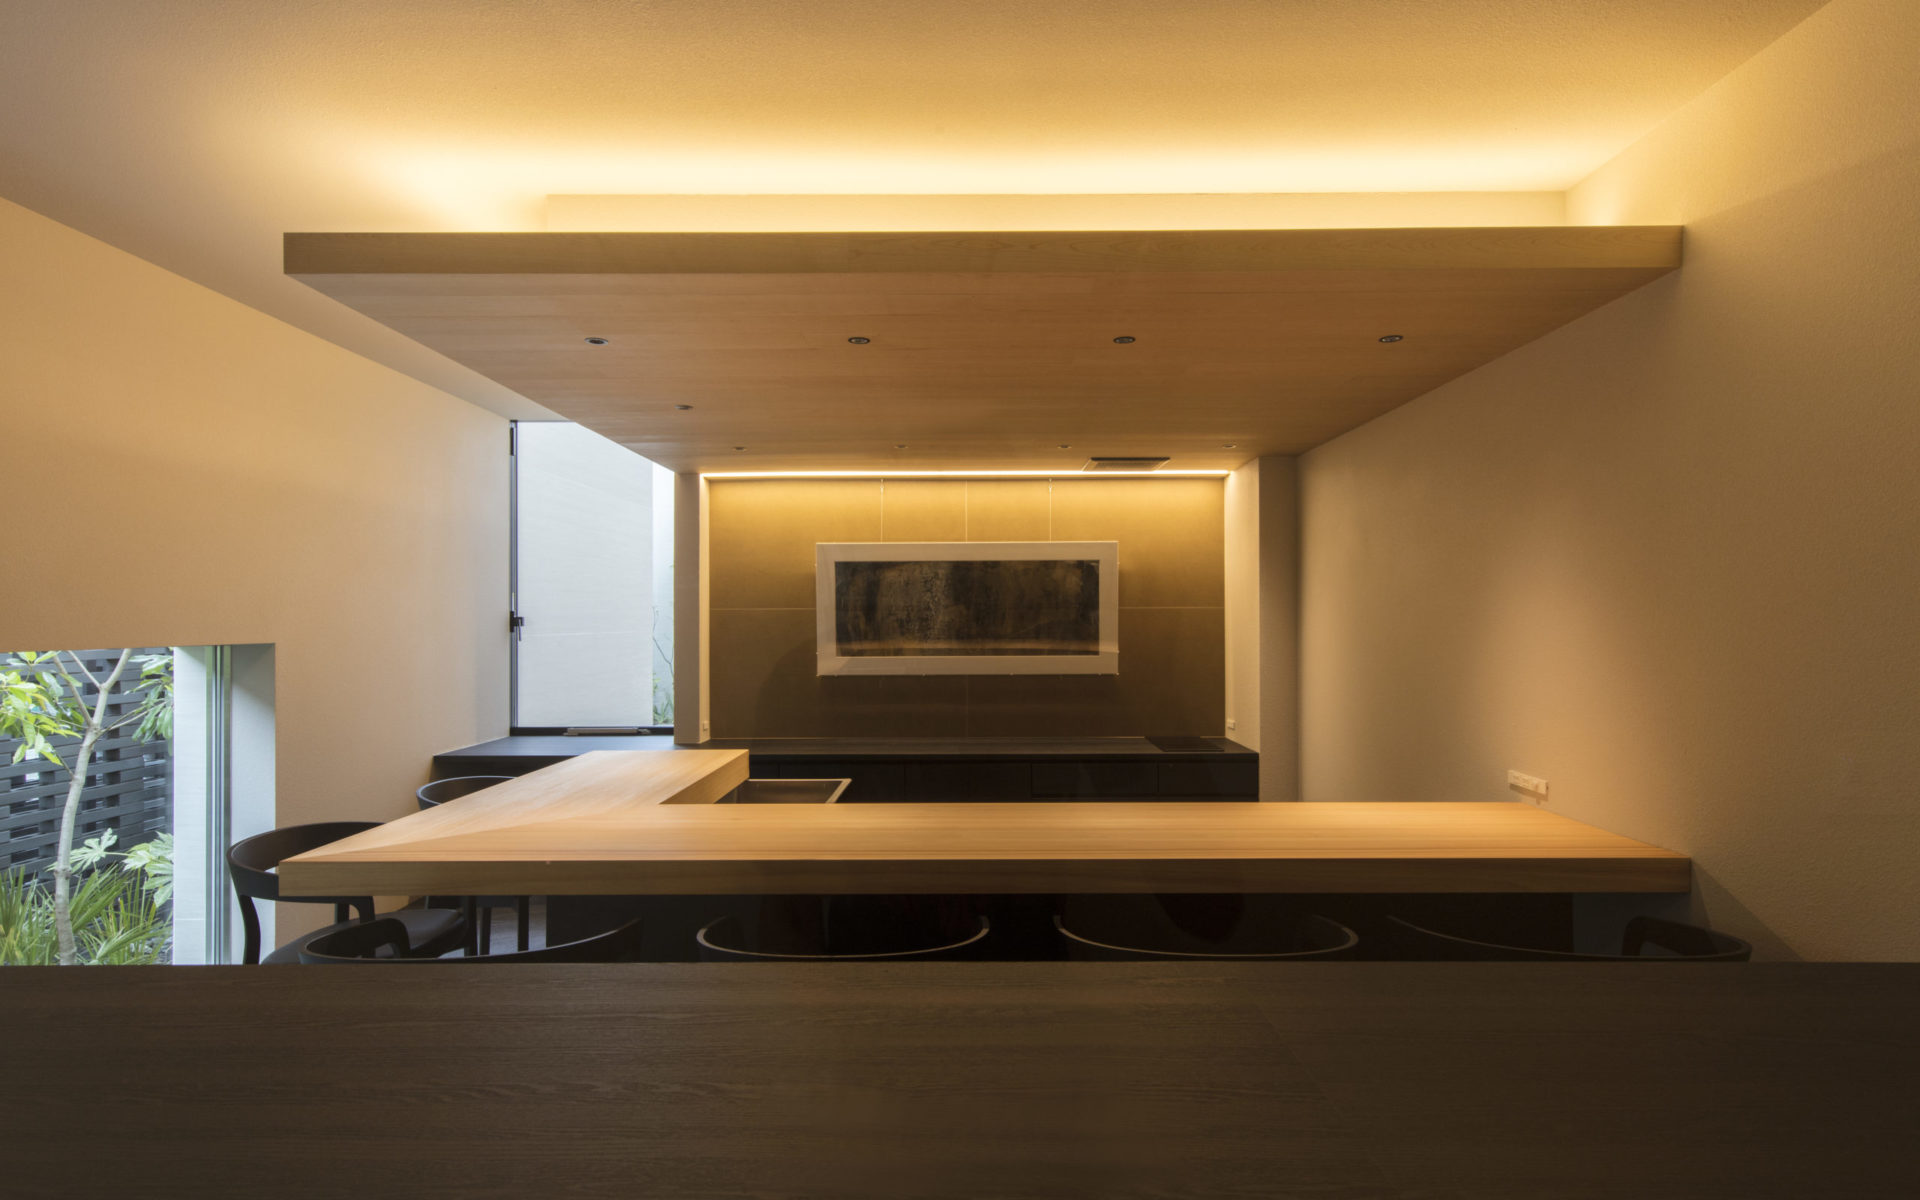 神戸の建築家真銅祥一朗設計の豪邸のゲストルームには桧の寿司カウンター